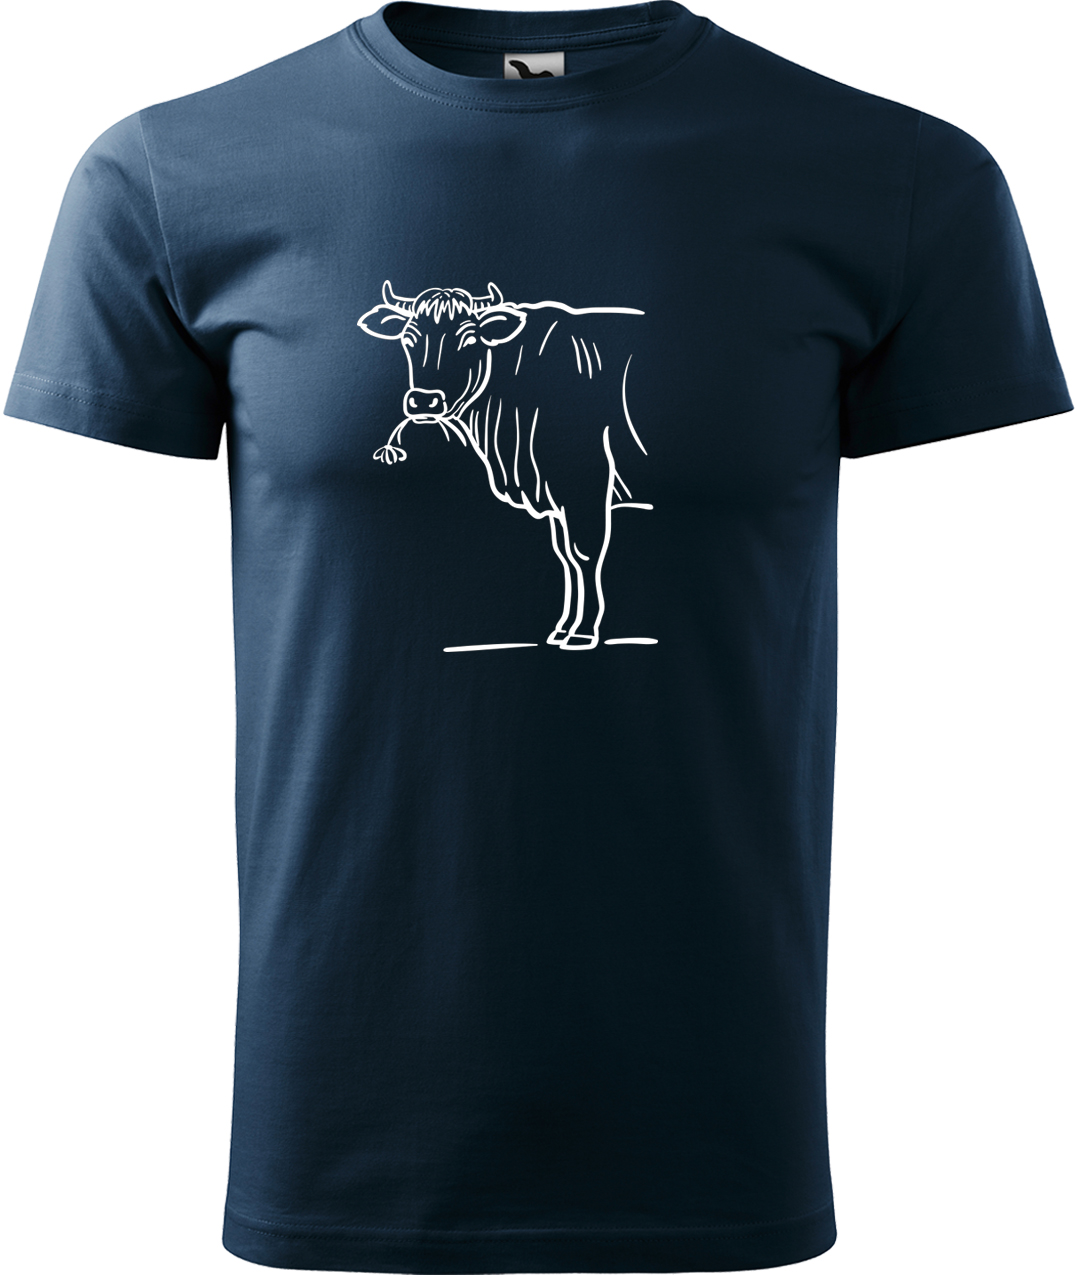 Pánské tričko s krávou - Býk Velikost: L, Barva: Námořní modrá (02), Střih: pánský